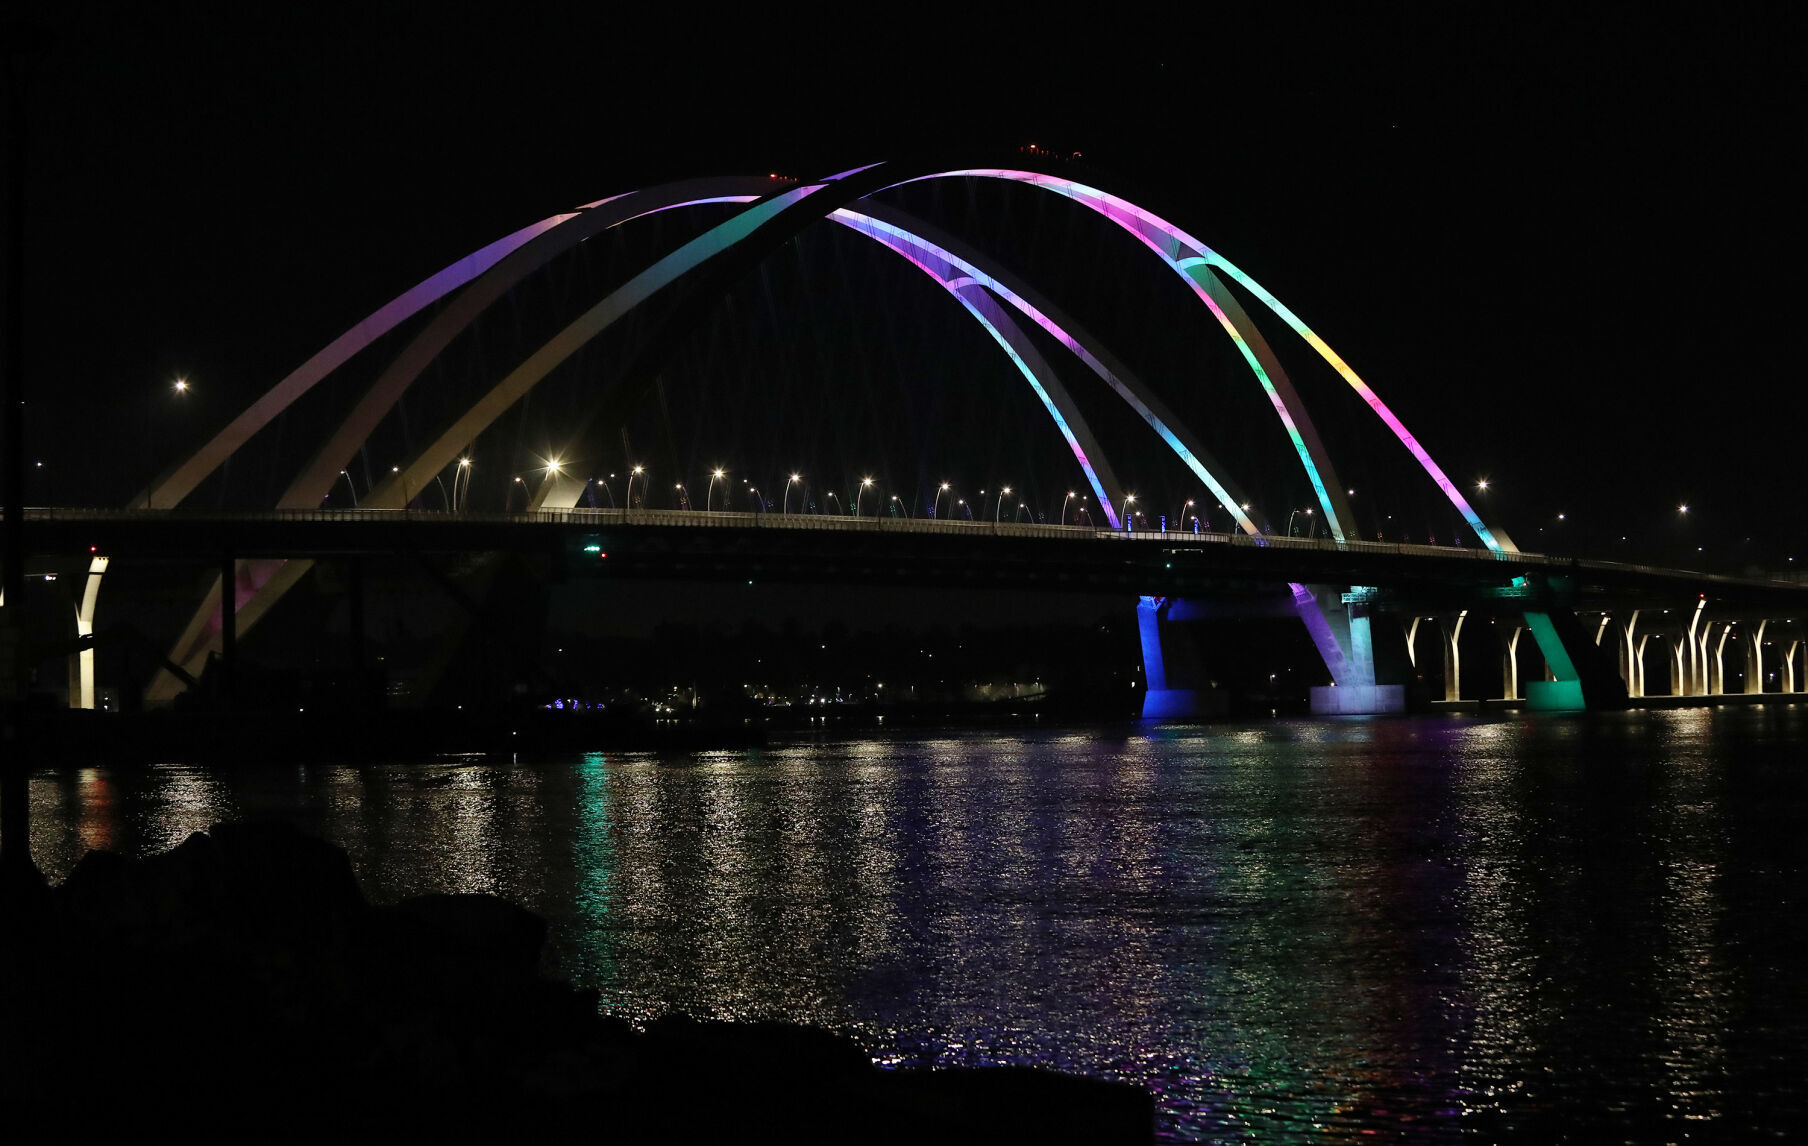 Quad-Cities I-74 bridge - who decides colors of the lights?